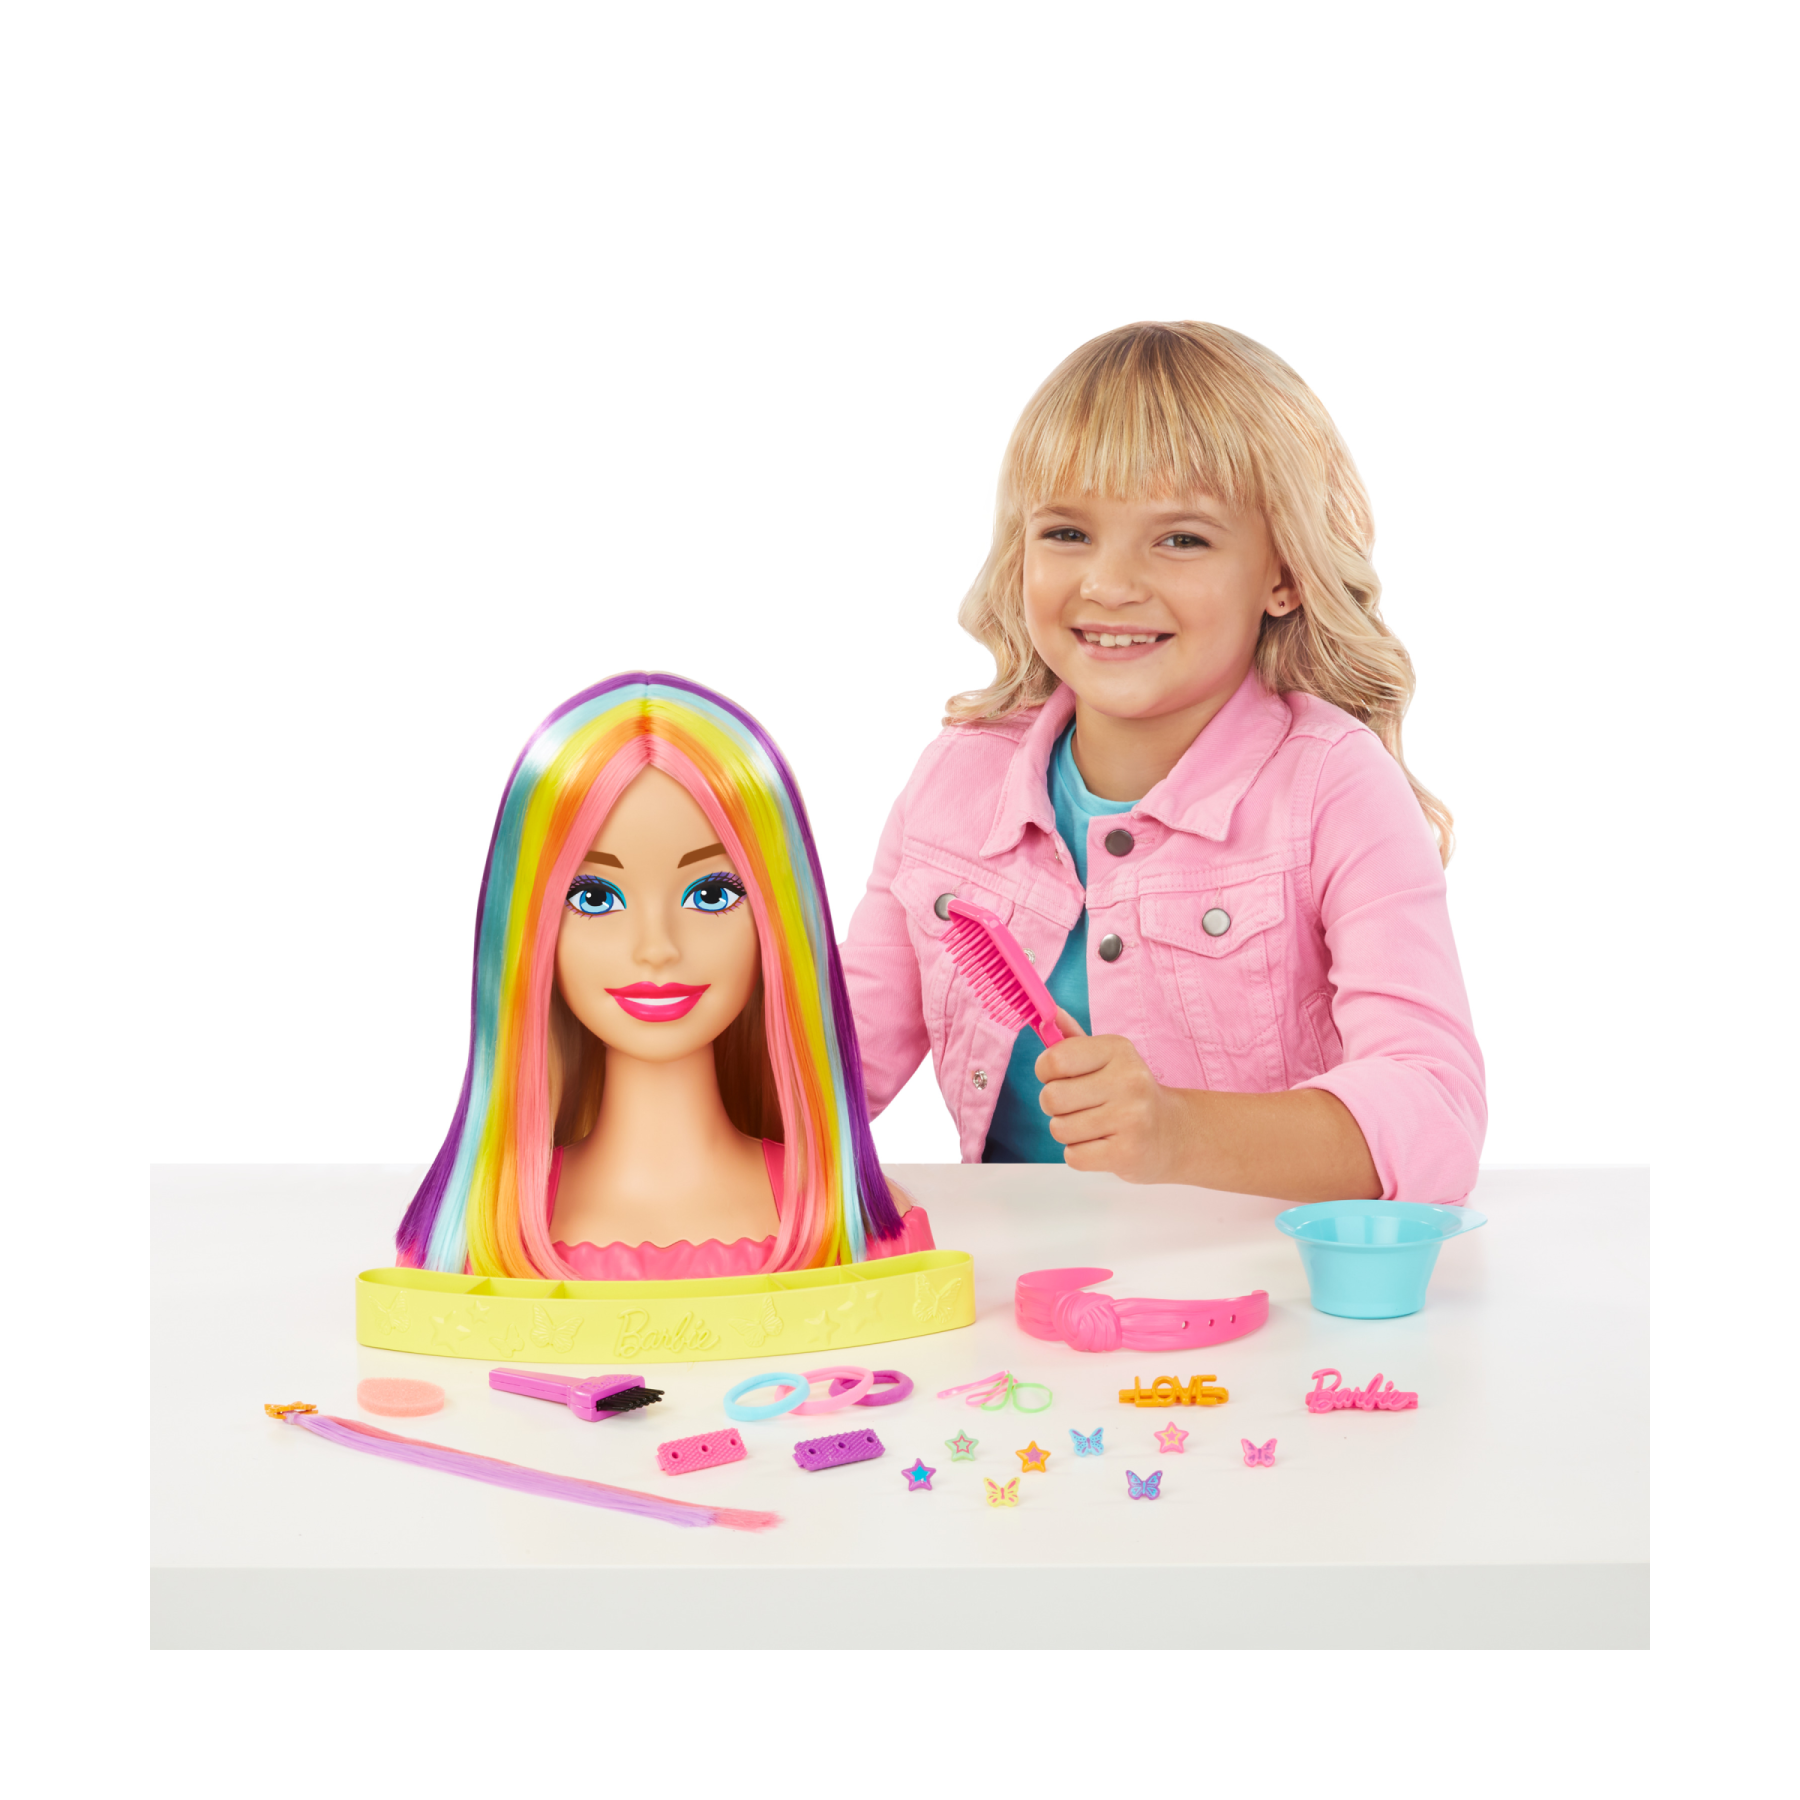 Barbie - super chioma hairstyle capelli arcobaleno, testa pettinabile con capelli biondi e ciocche arcobaleno fluo da acconciare, con accessori color reveal, 3+ anni, hmd78 - Barbie